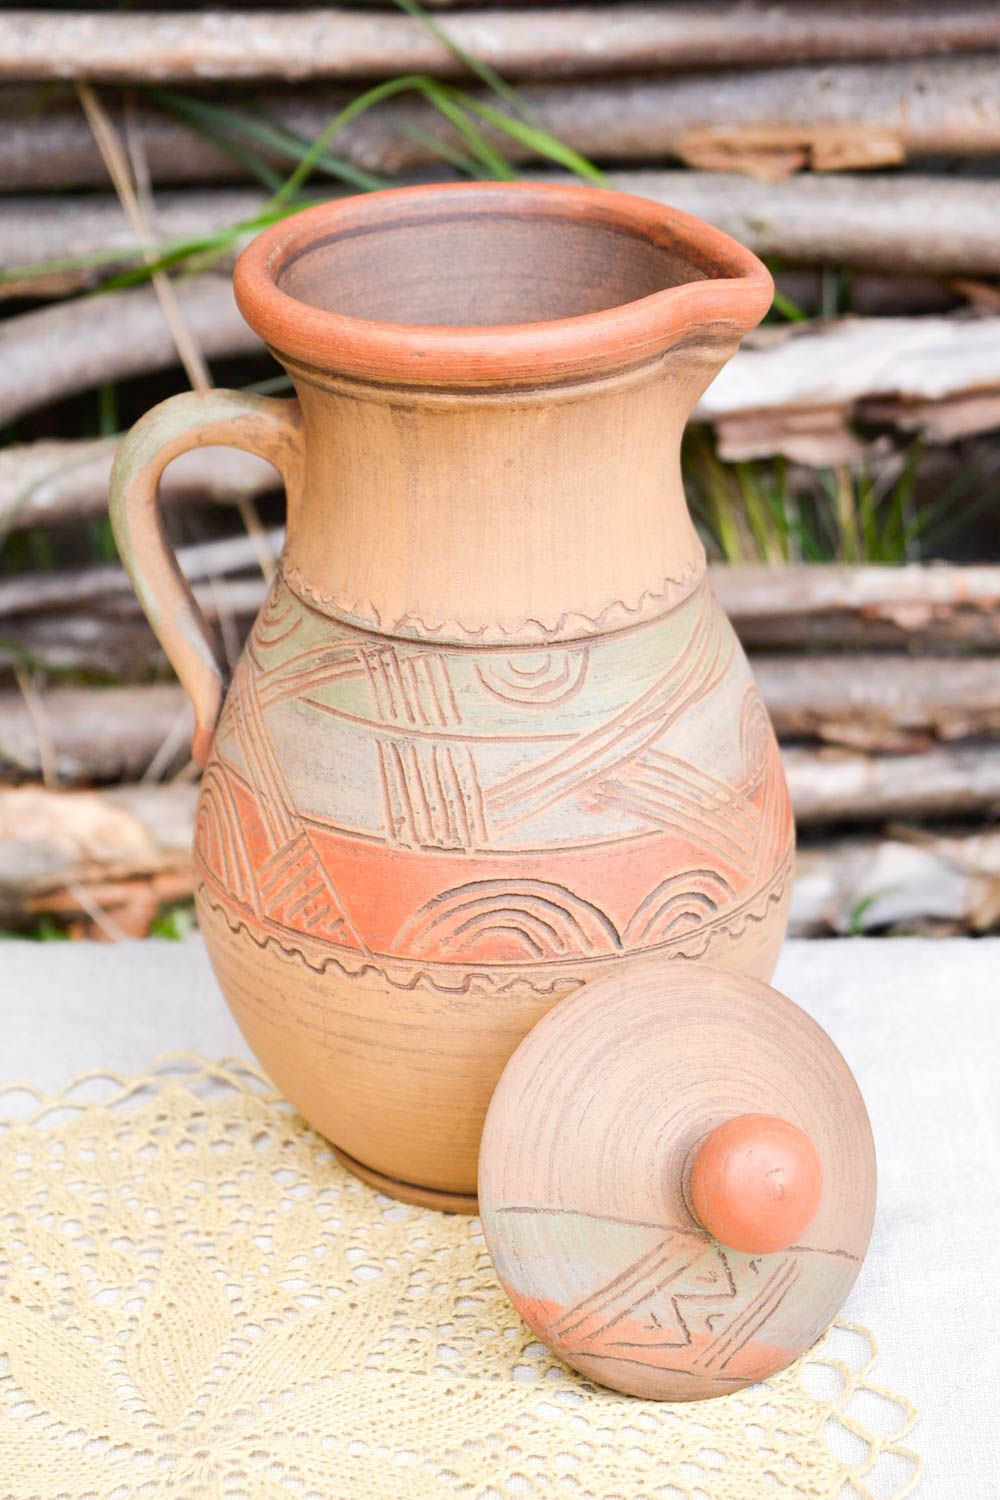 Глиняный кувшин ручной работы емкость для питья необычная посуда из керамики  фото 1